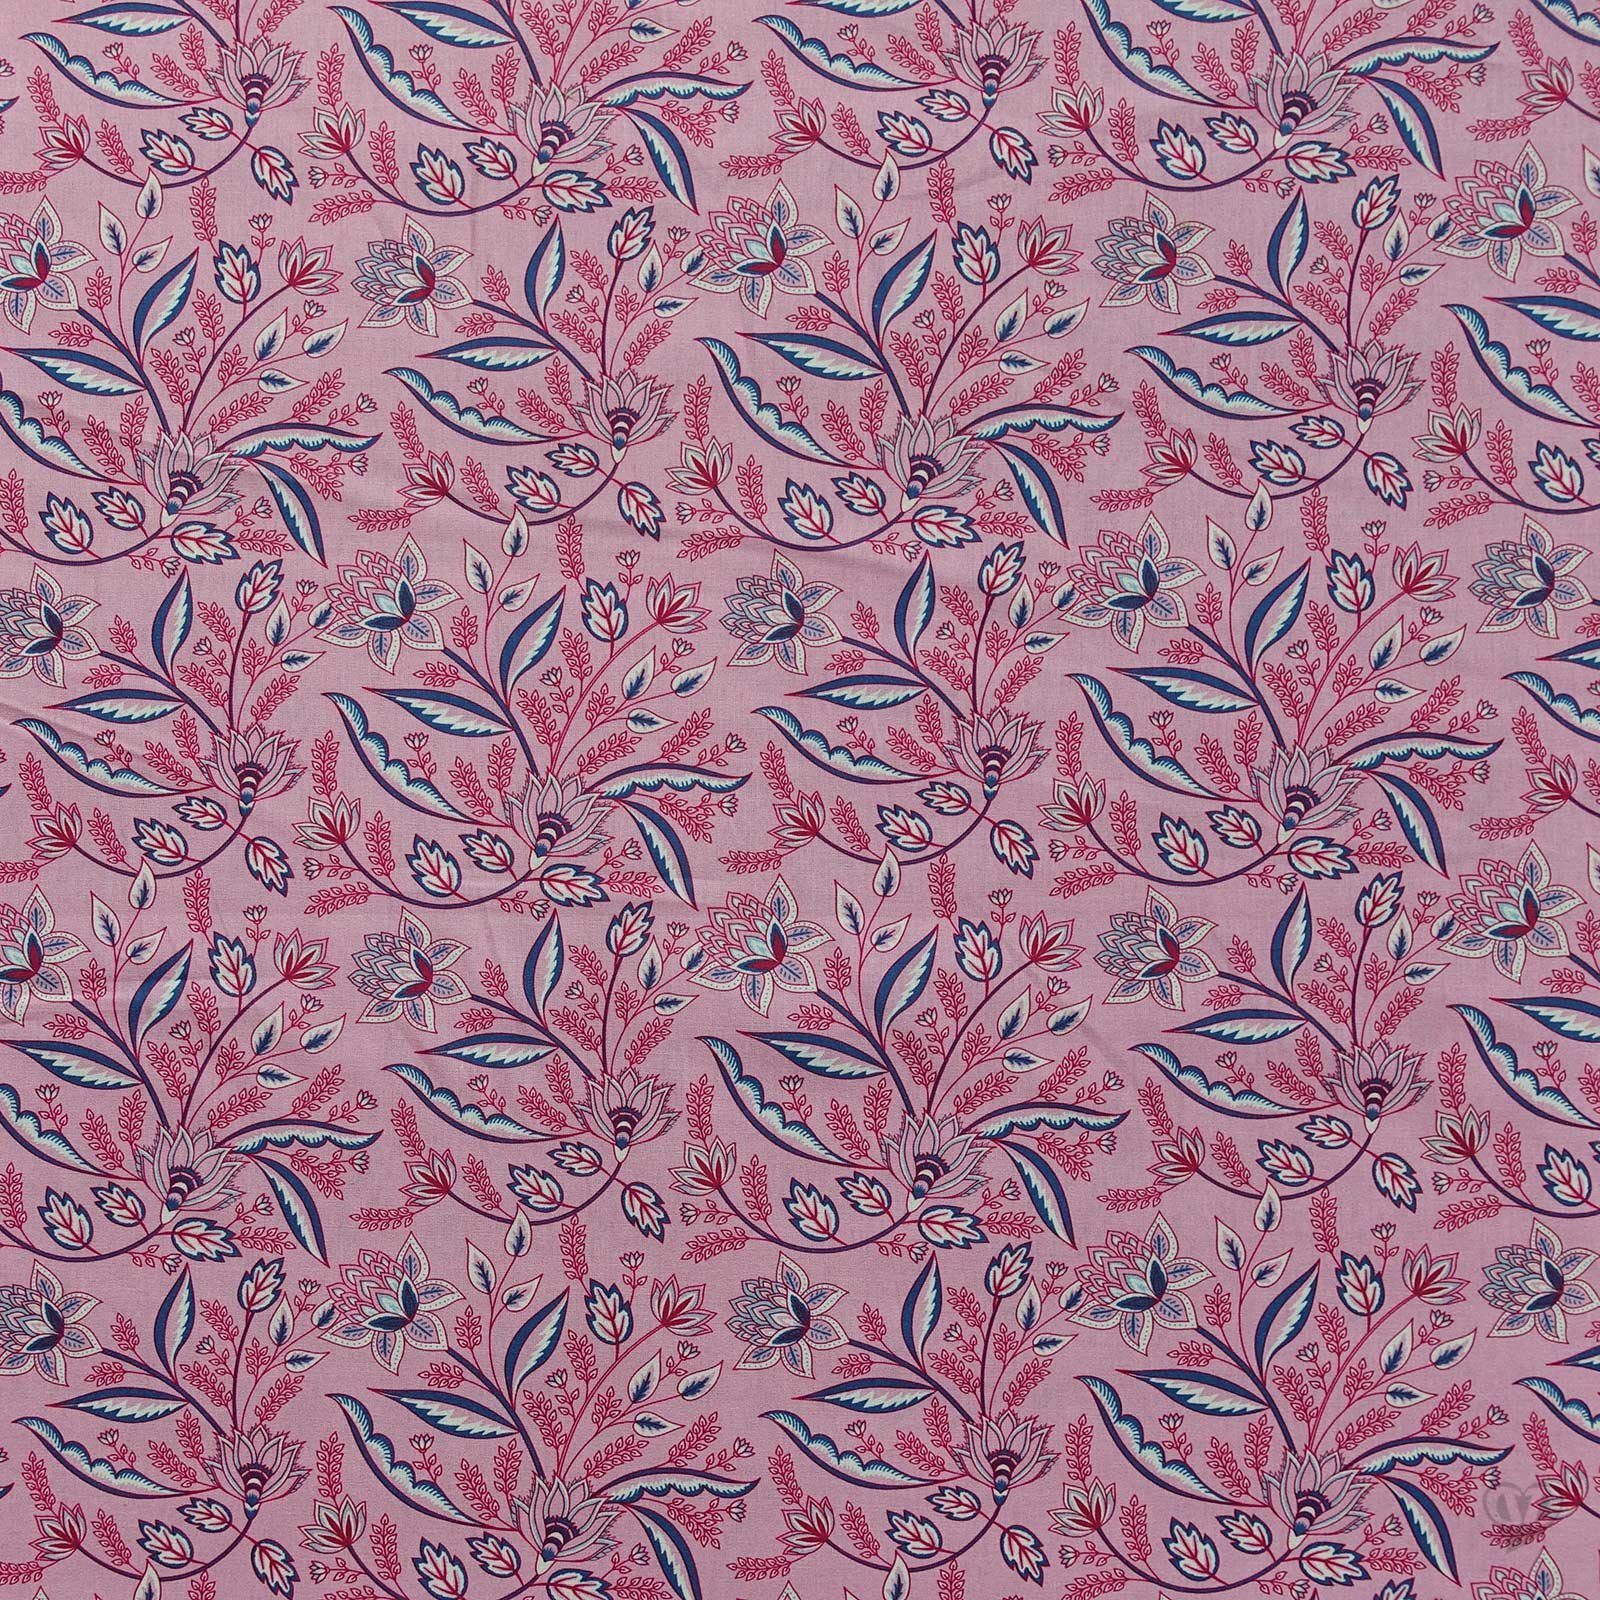 maDDma Stoff Popeline Baumwollstoff florale Muster 50x140cm Meterware, 011 - rosa